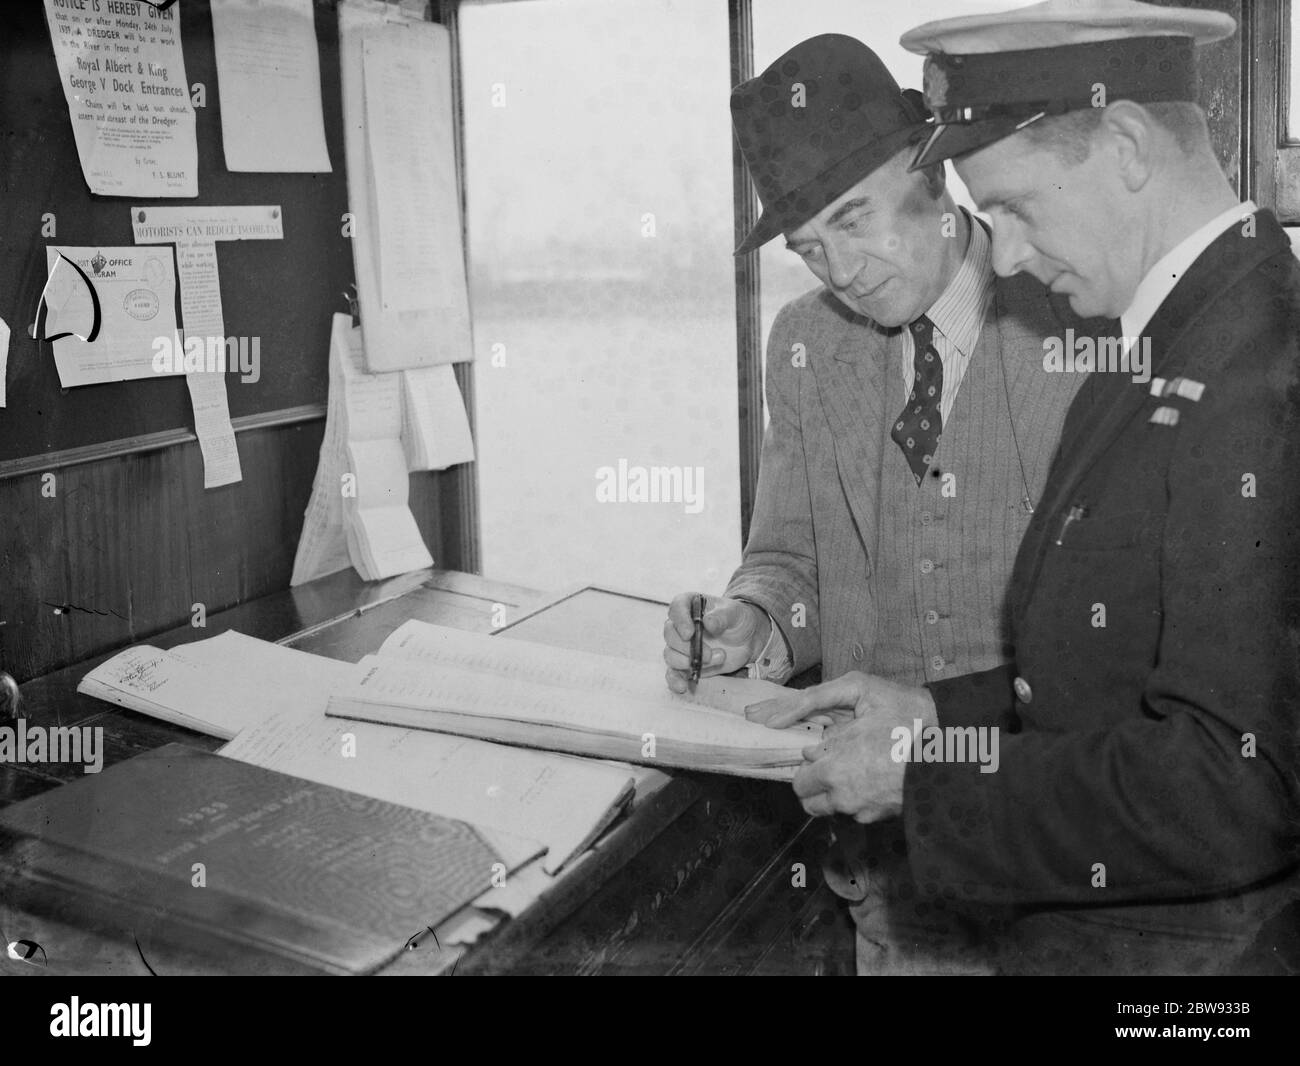 Thames Piloten in Gravesend, Kent, die Schiffen helfen, durch die verstopften Gewässer des Hafens zu navigieren. W Liley mit G Coles, der Sekretär. 1939 Stockfoto